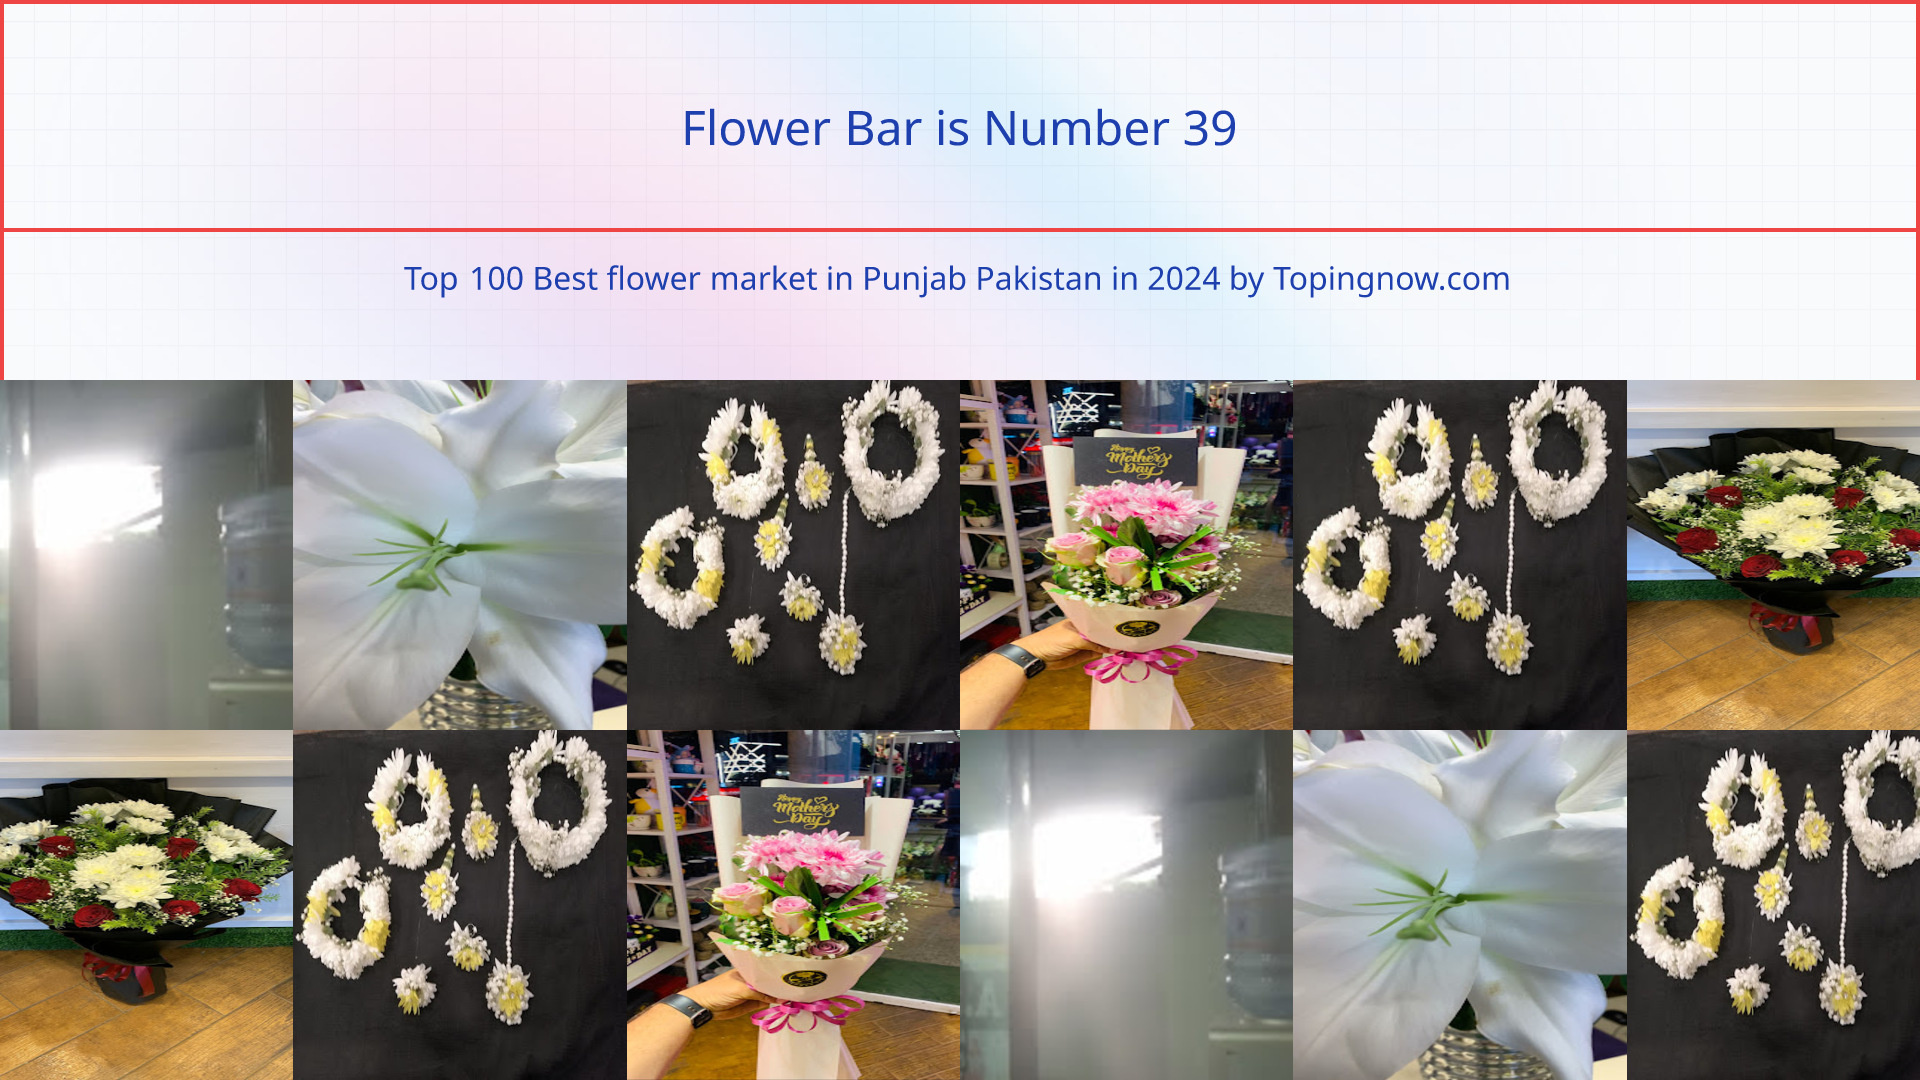 Flower Bar: Top 100 Best flower market in Punjab Pakistan in 2024